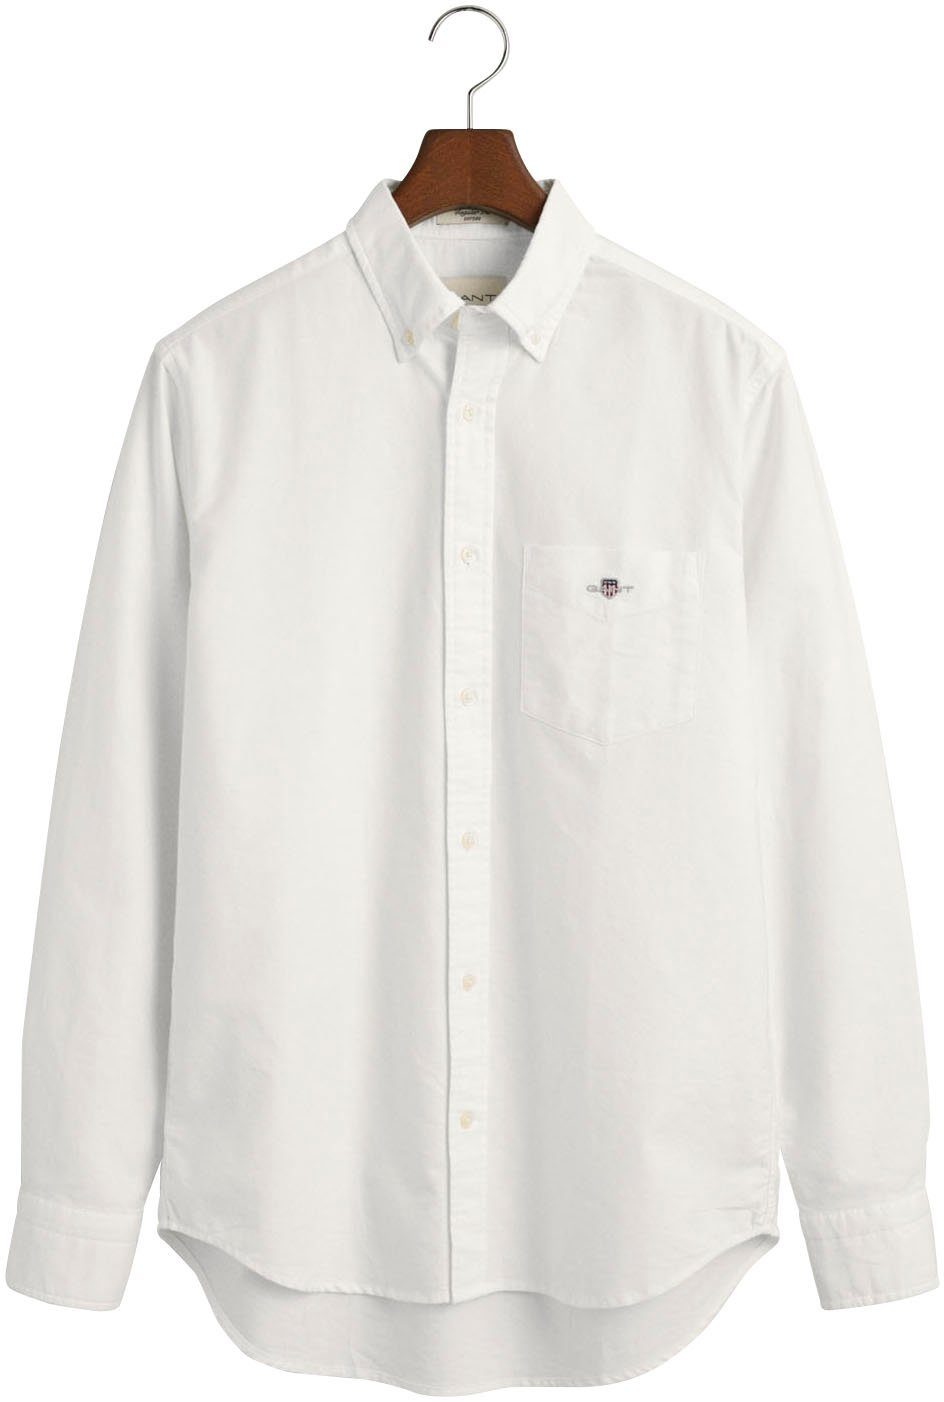 Gant Businesshemd REG OXFORD Hemd white Regular Oxford Fit SHIRT